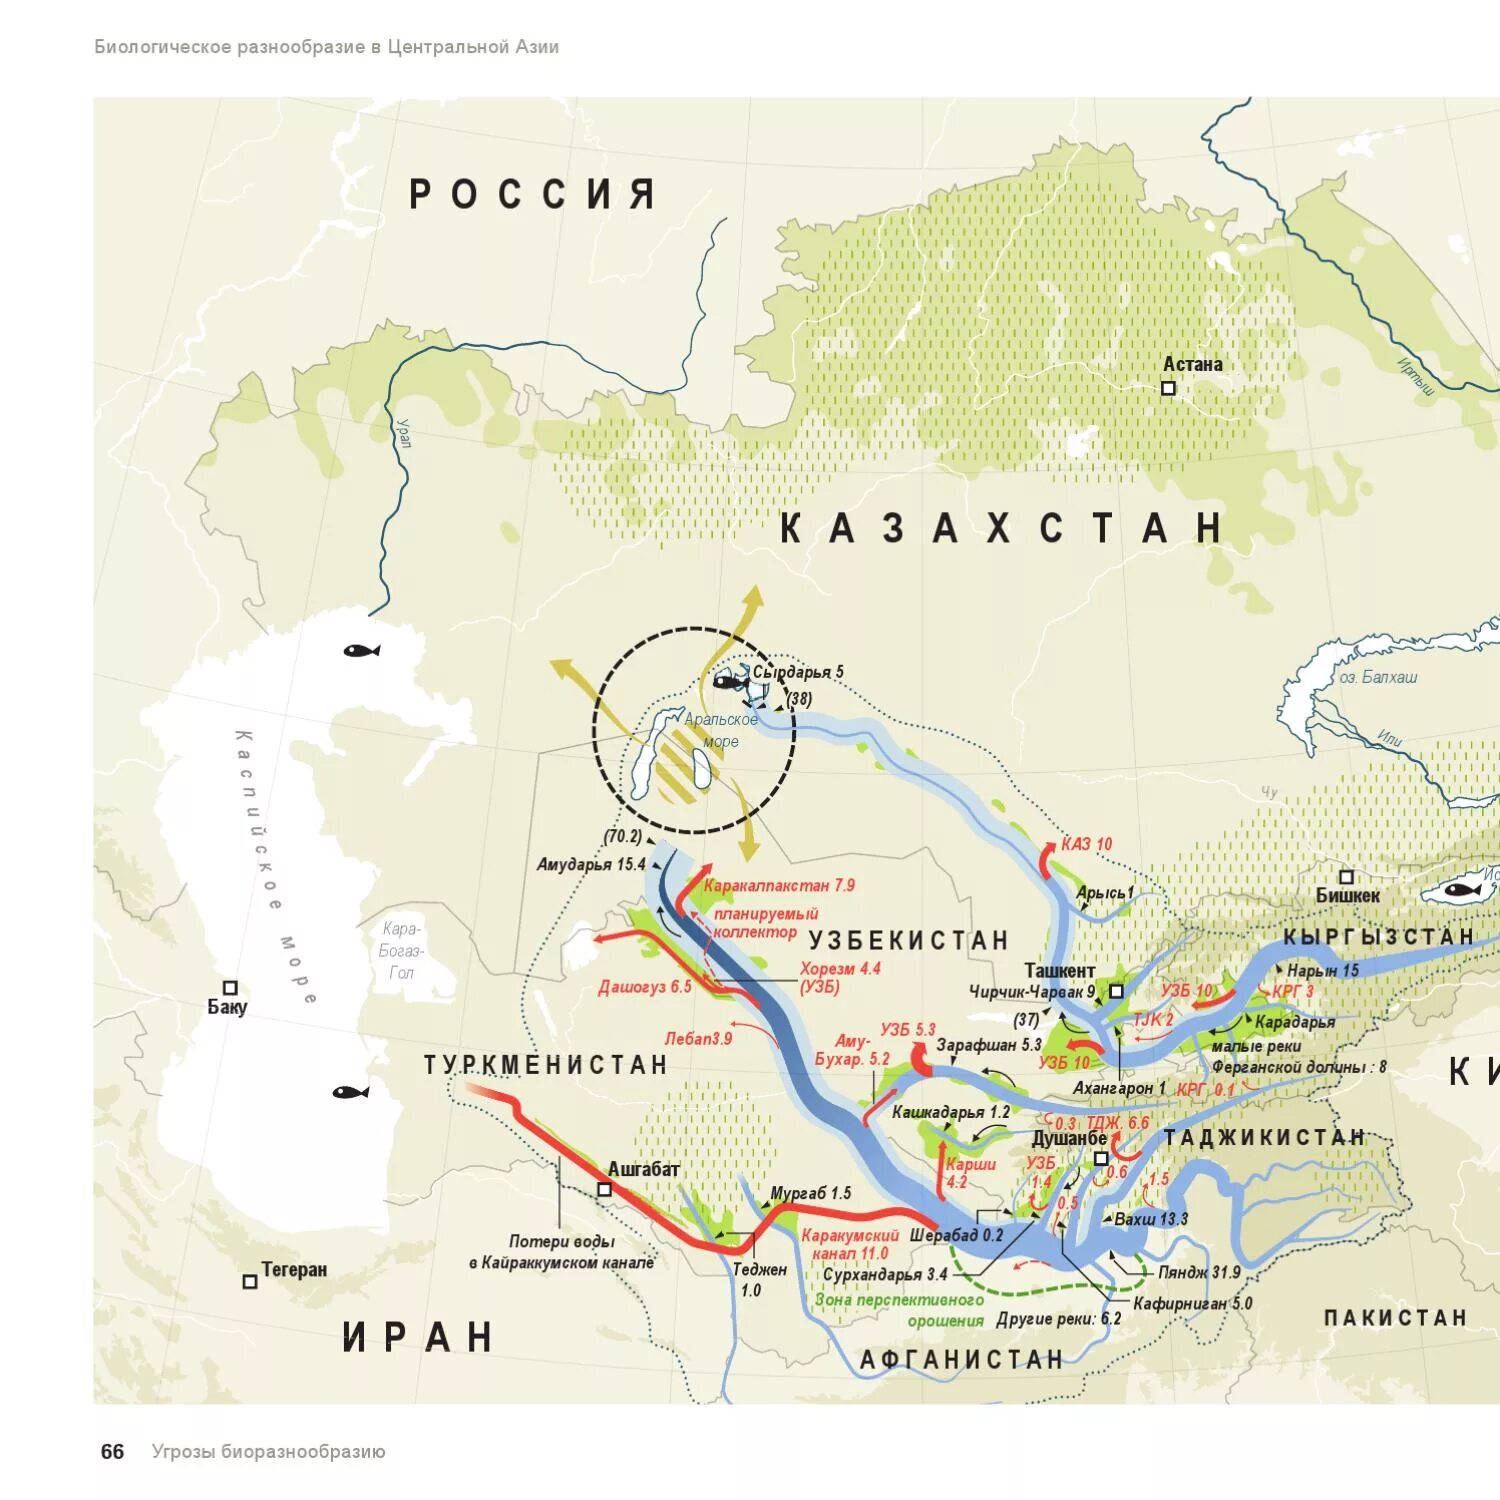 Реки Амударья и Сырдарья на карте. Река Амударья на карте Азии. Аральское море Амударья и Сырдарья на карте.